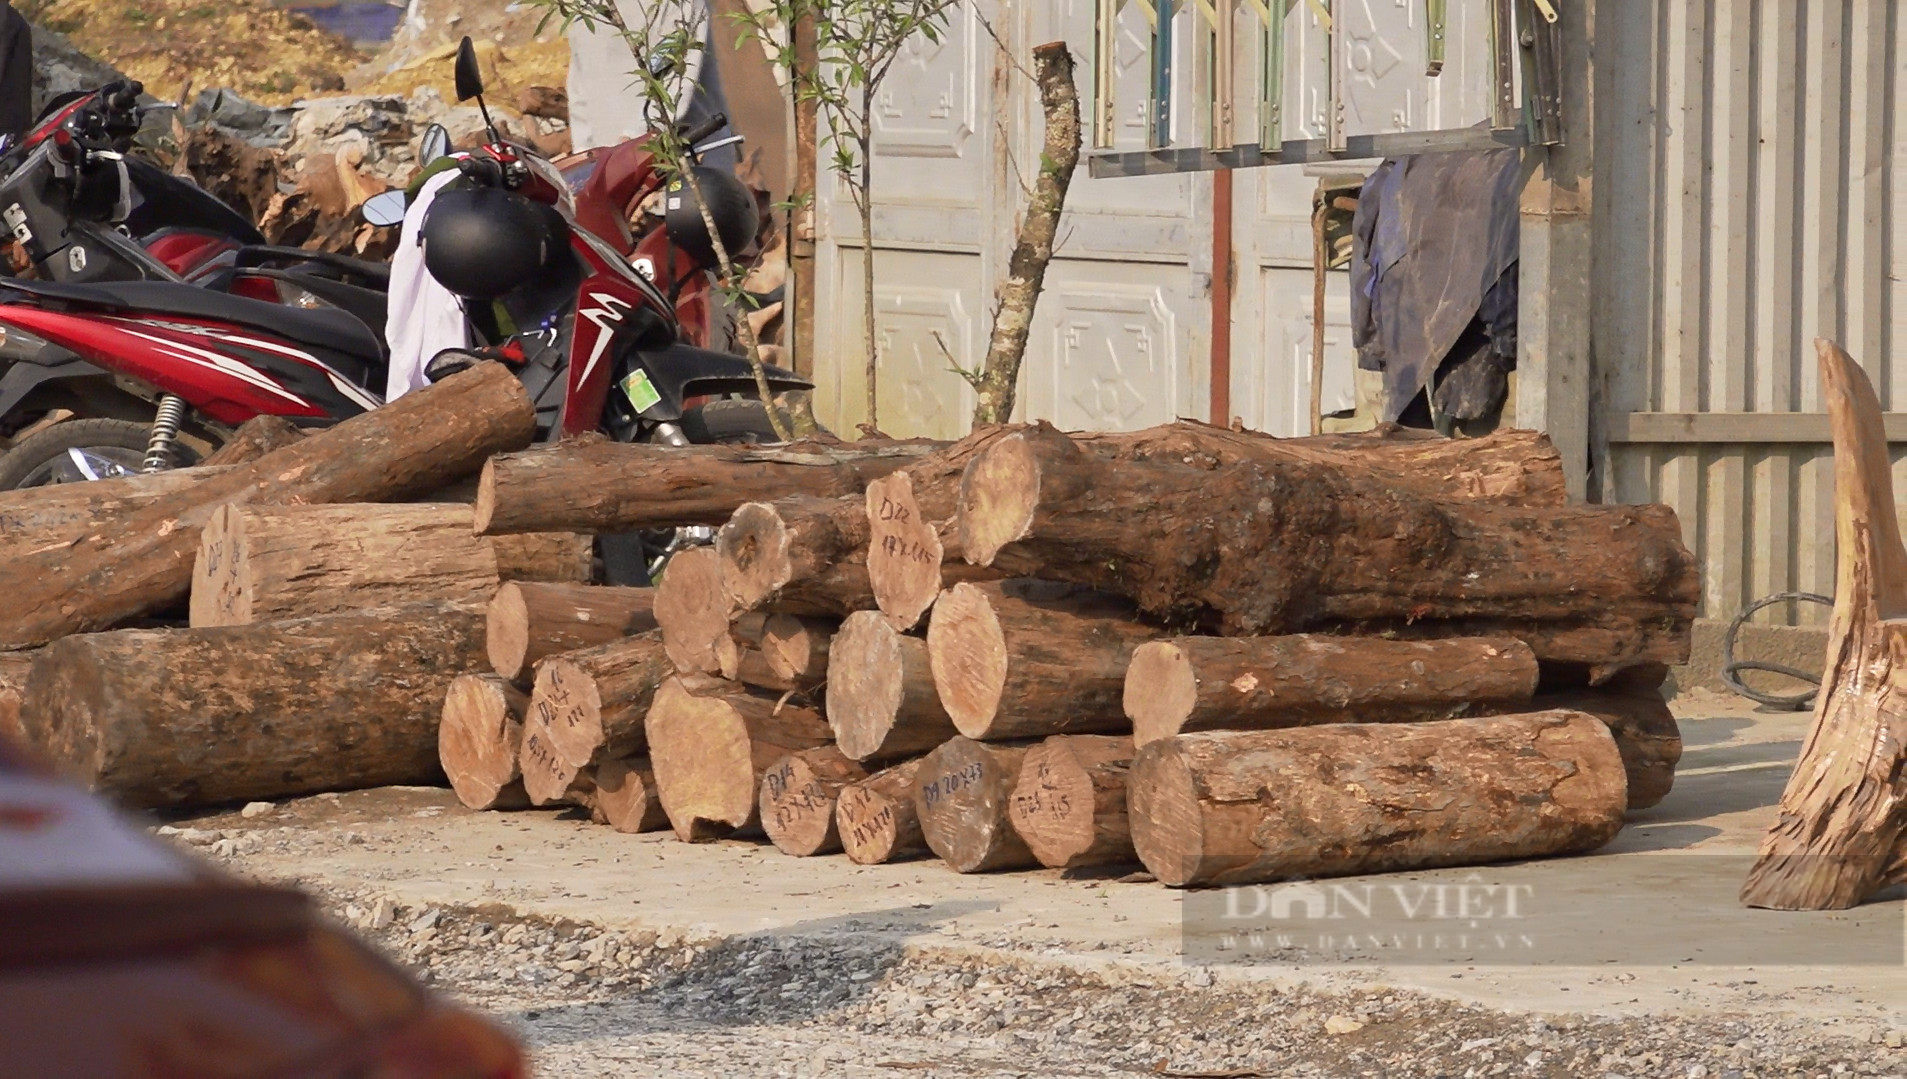 Thu giữ hàng trăm khúc gỗ quý tàng trữ trái phép ở Sìn Hồ (Lai Châu) - Ảnh 3.